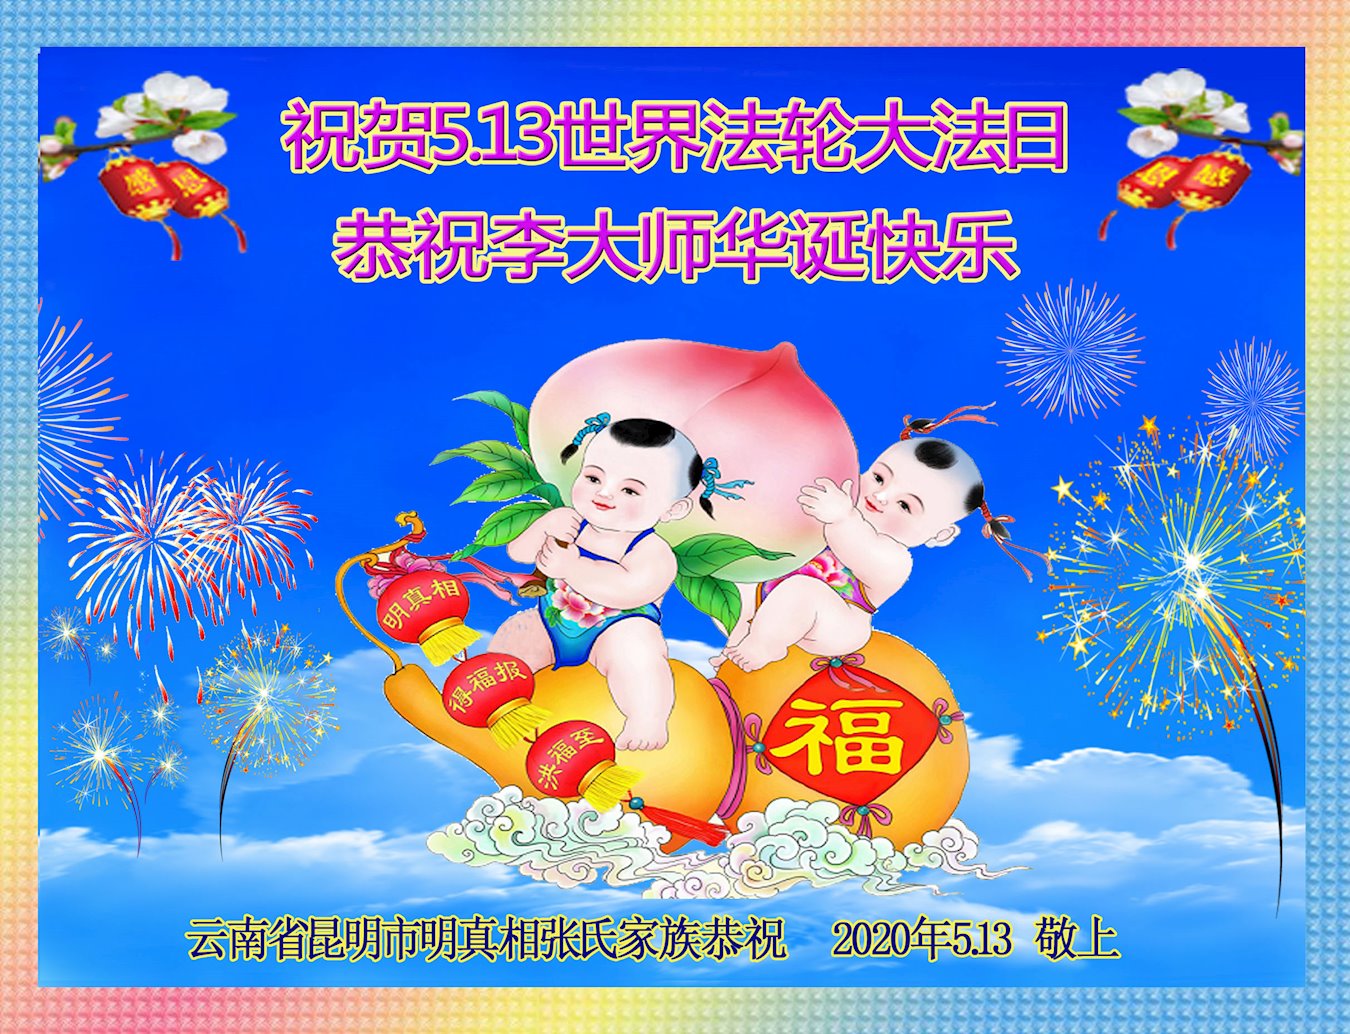 Image for article Des sympathisants souhaitent un joyeux anniversaire à Maître Li Hongzhi